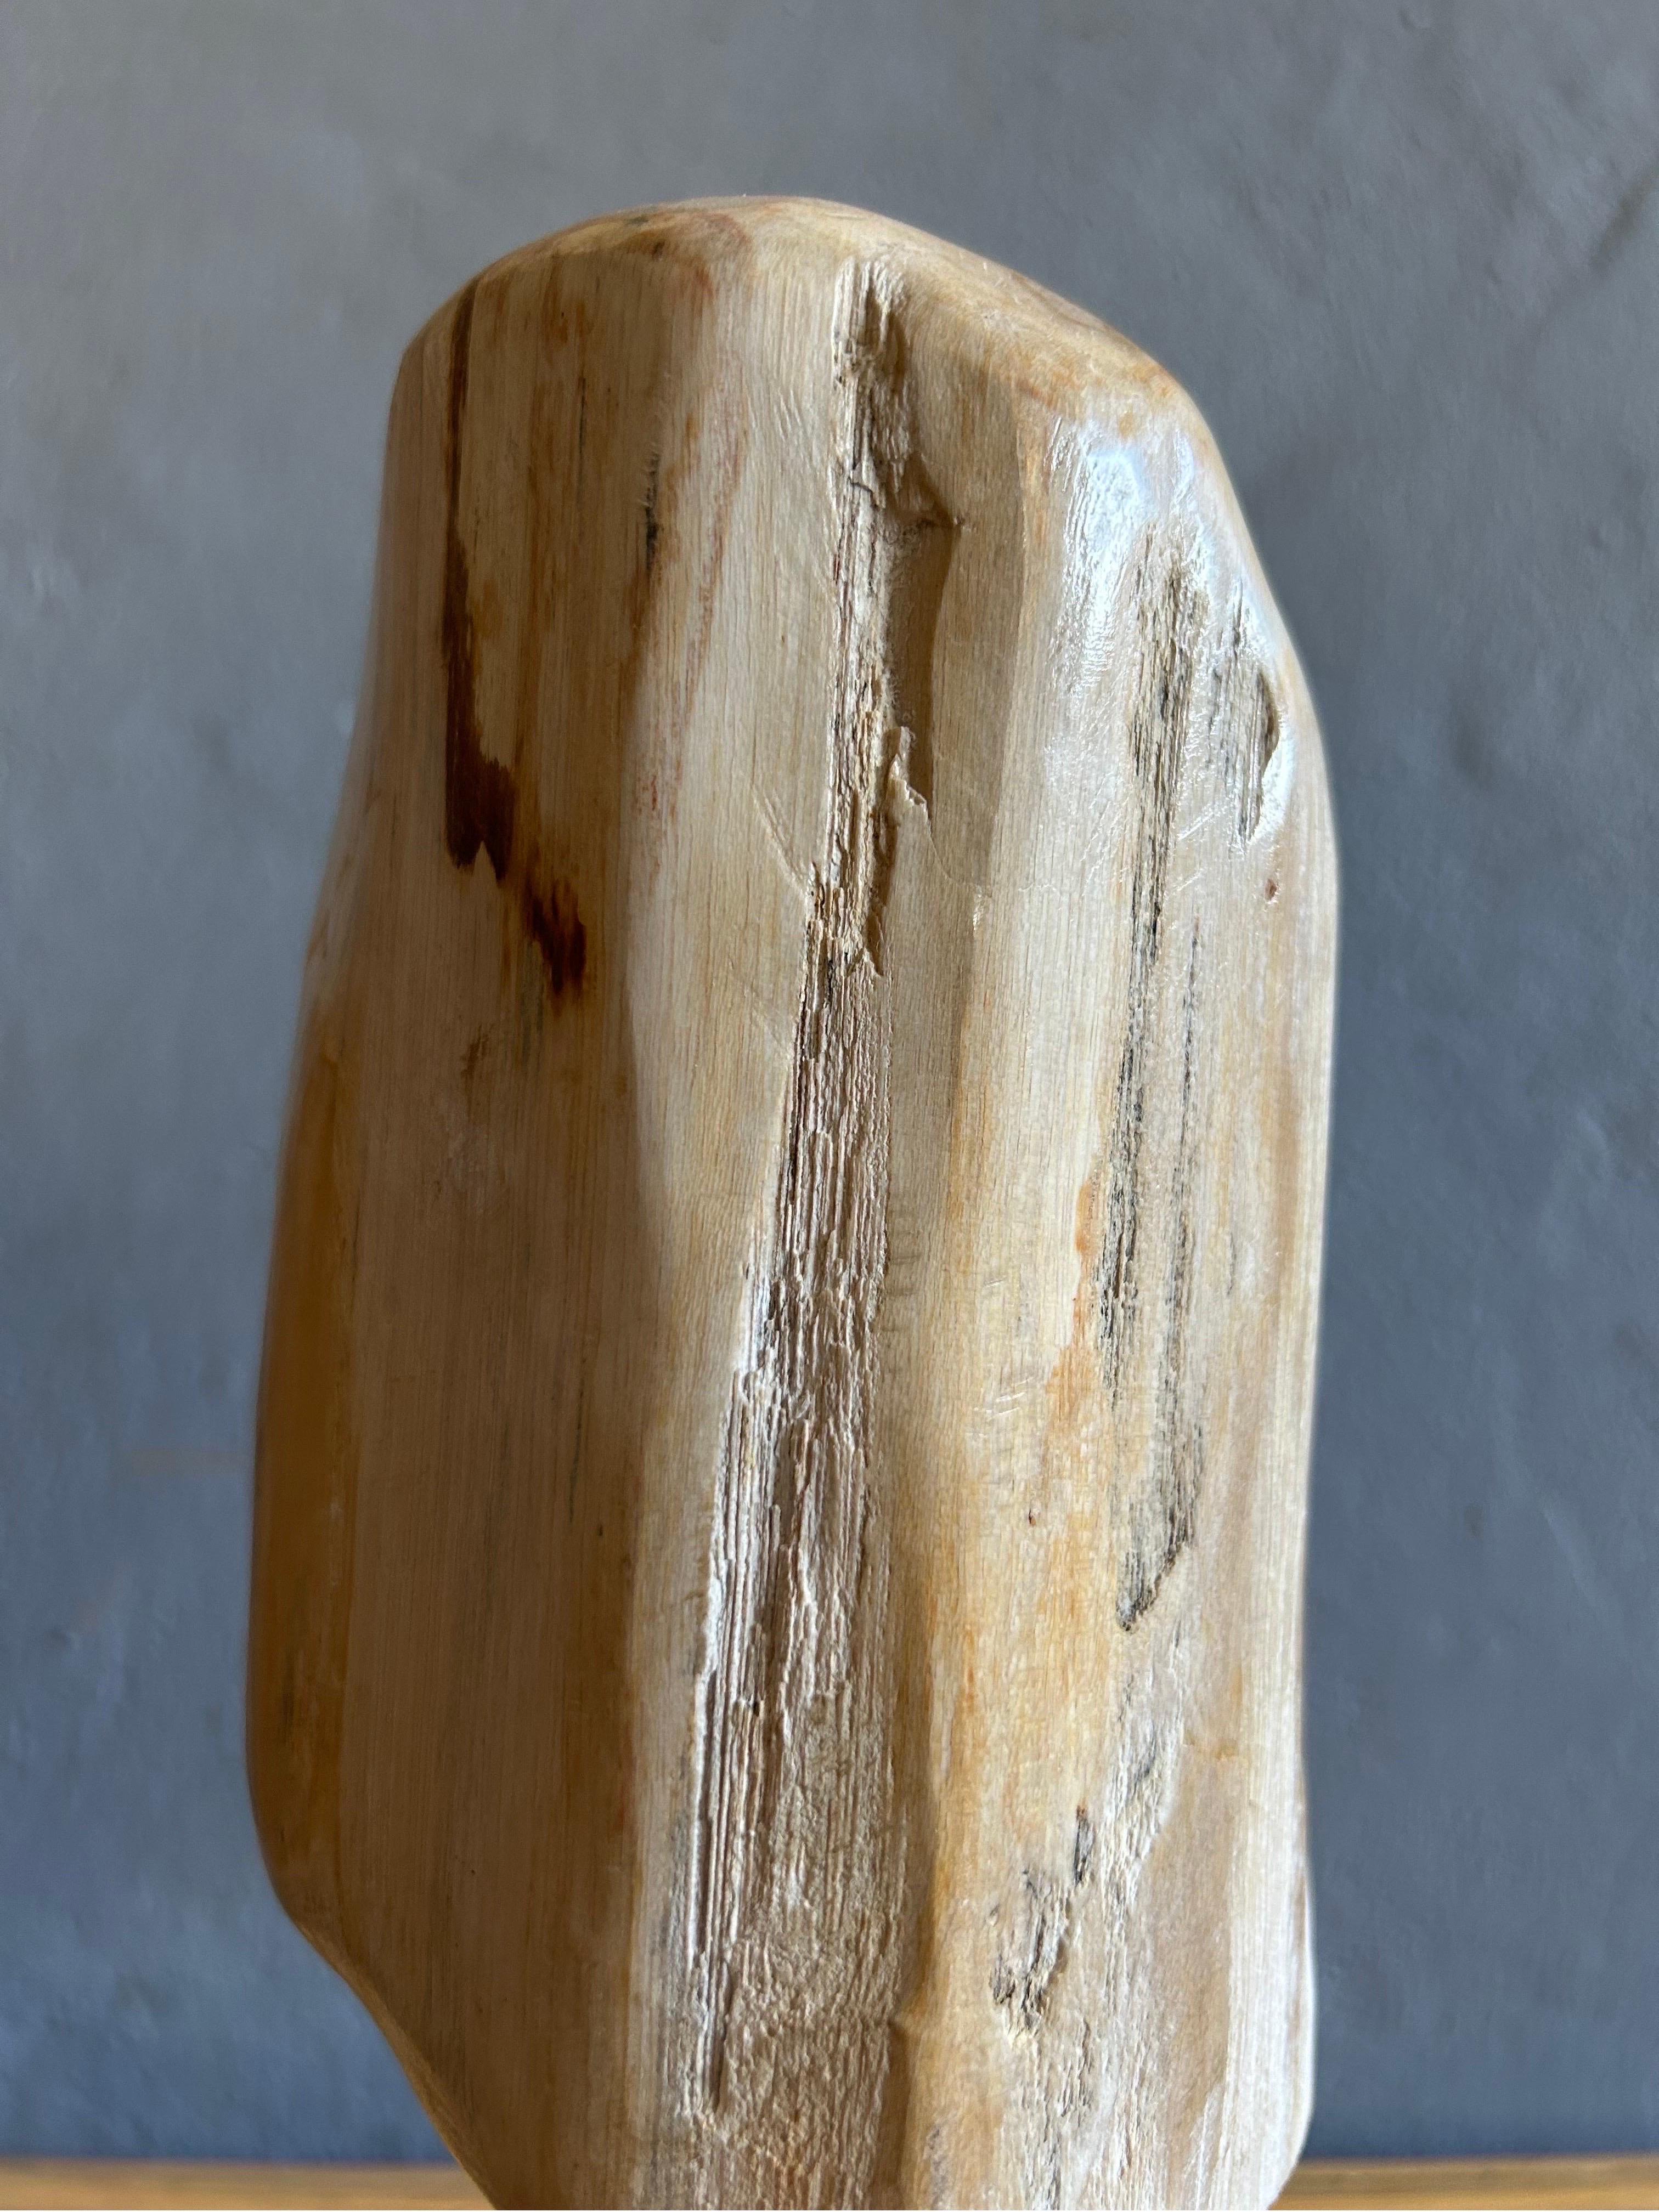 Sculpture abstraite en pierre et en bois réalisée par un artiste danois inconnu au Danemark dans les années 1980.

La sculpture est faite d'une pierre inconnue et d'une belle base en pin patiné. Elle est maintenue par un poteau en acier qui donne un